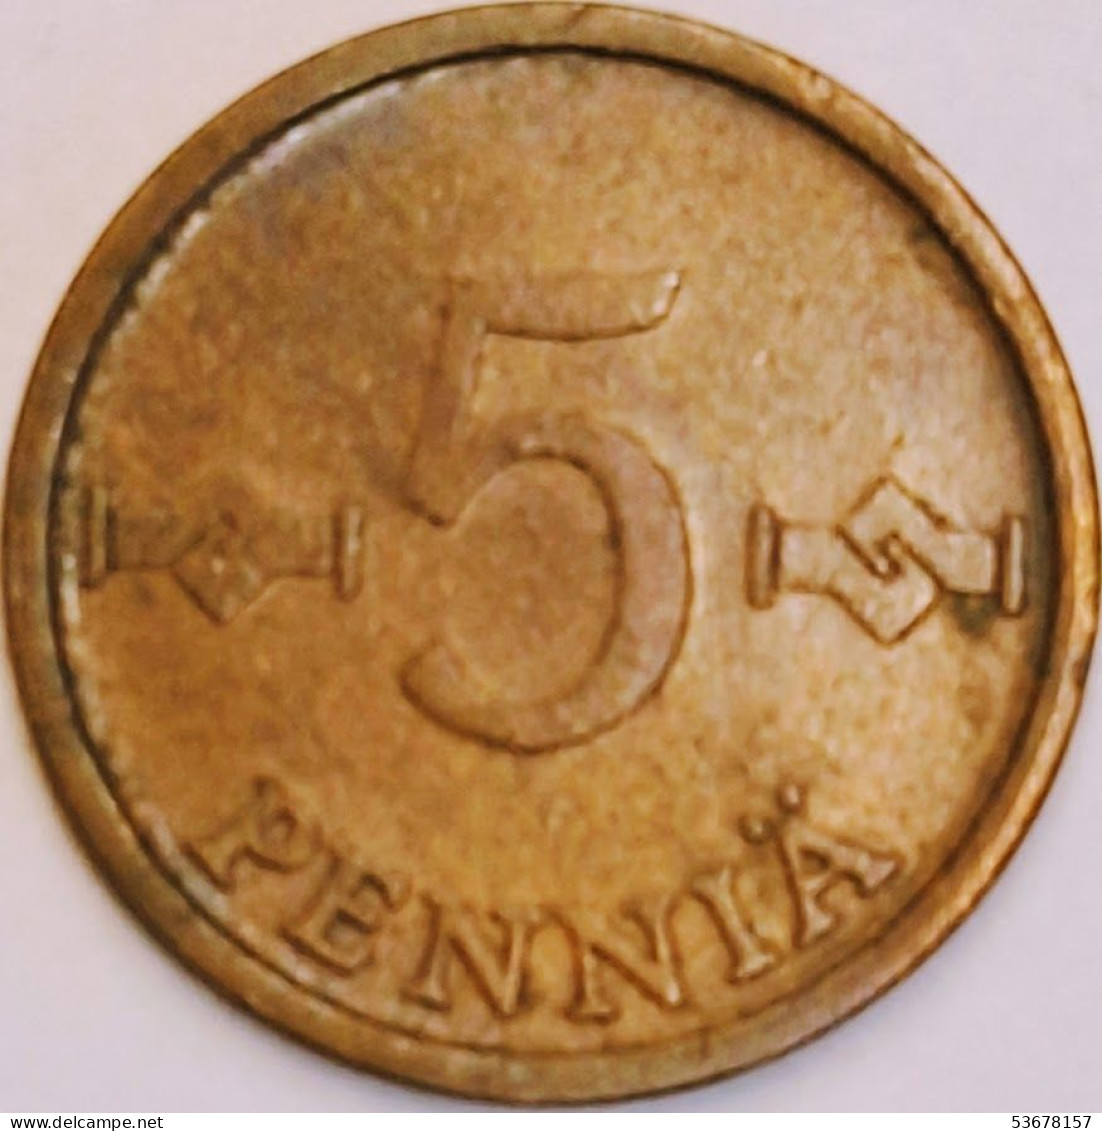 Finland - 5 Pennia 1974, KM# 45 (#3909) - Finlandia